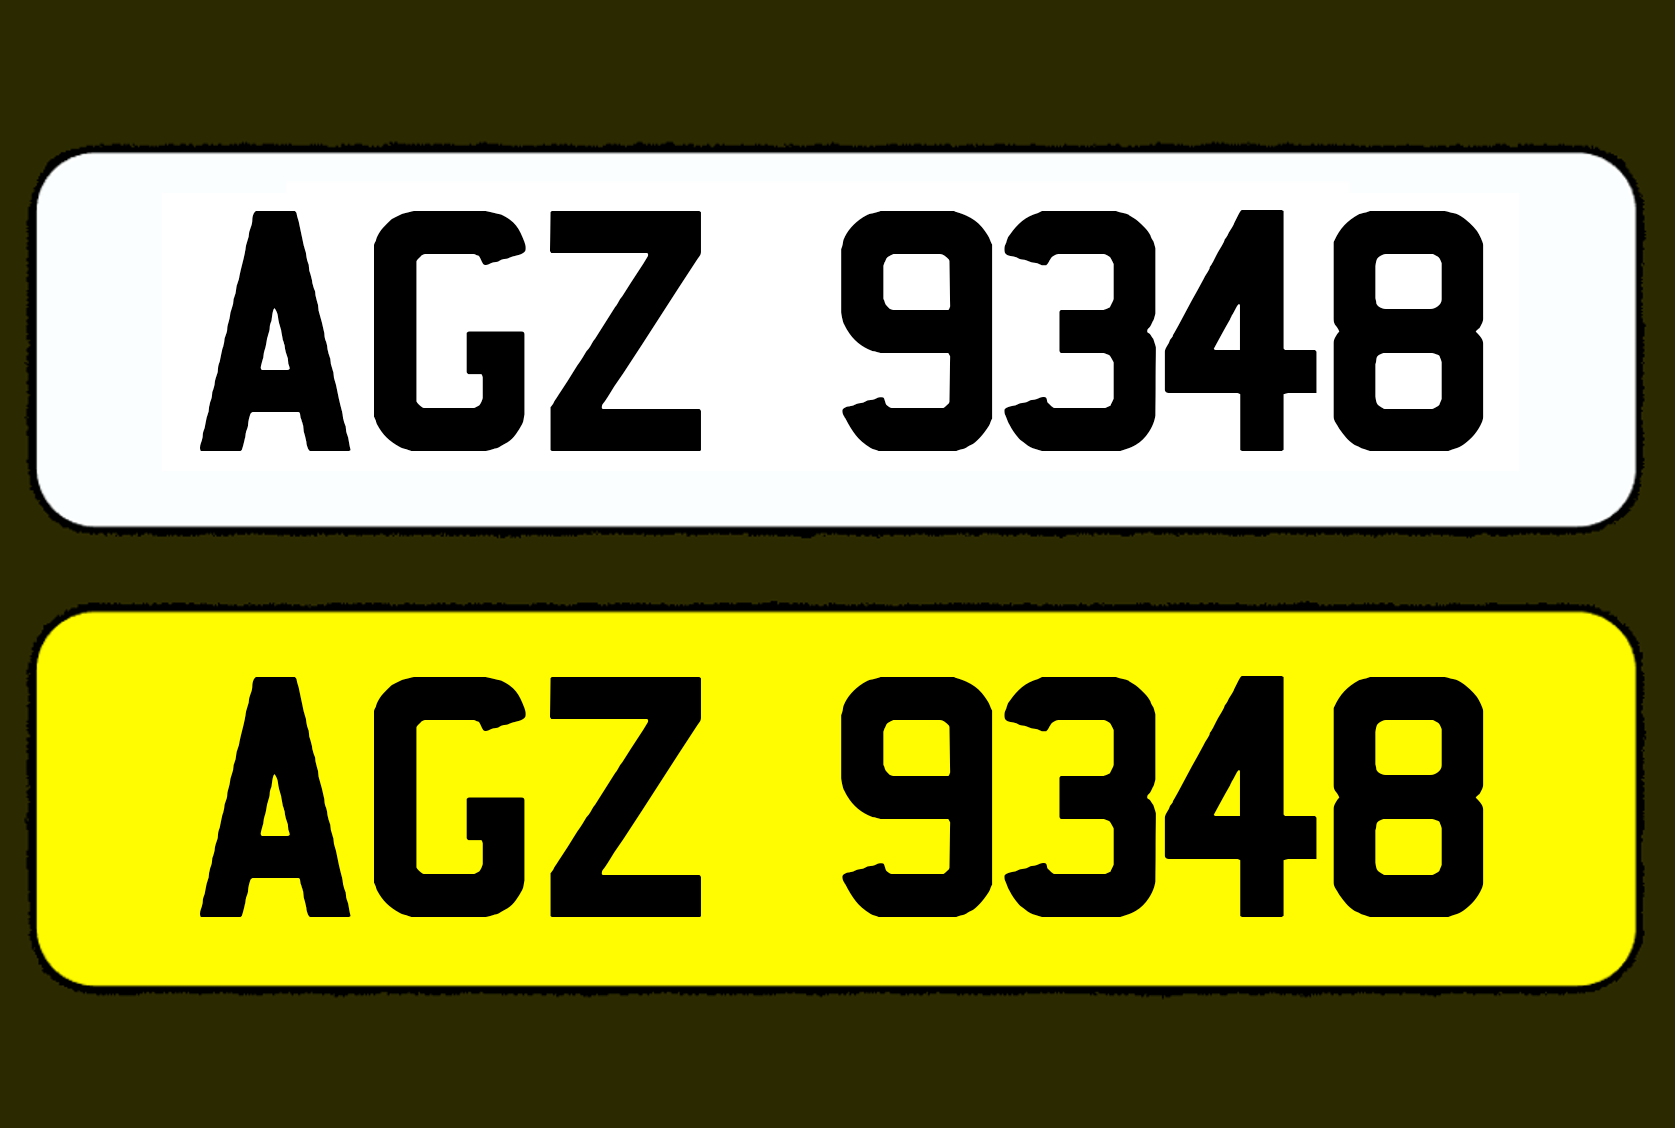 AGZ 9348